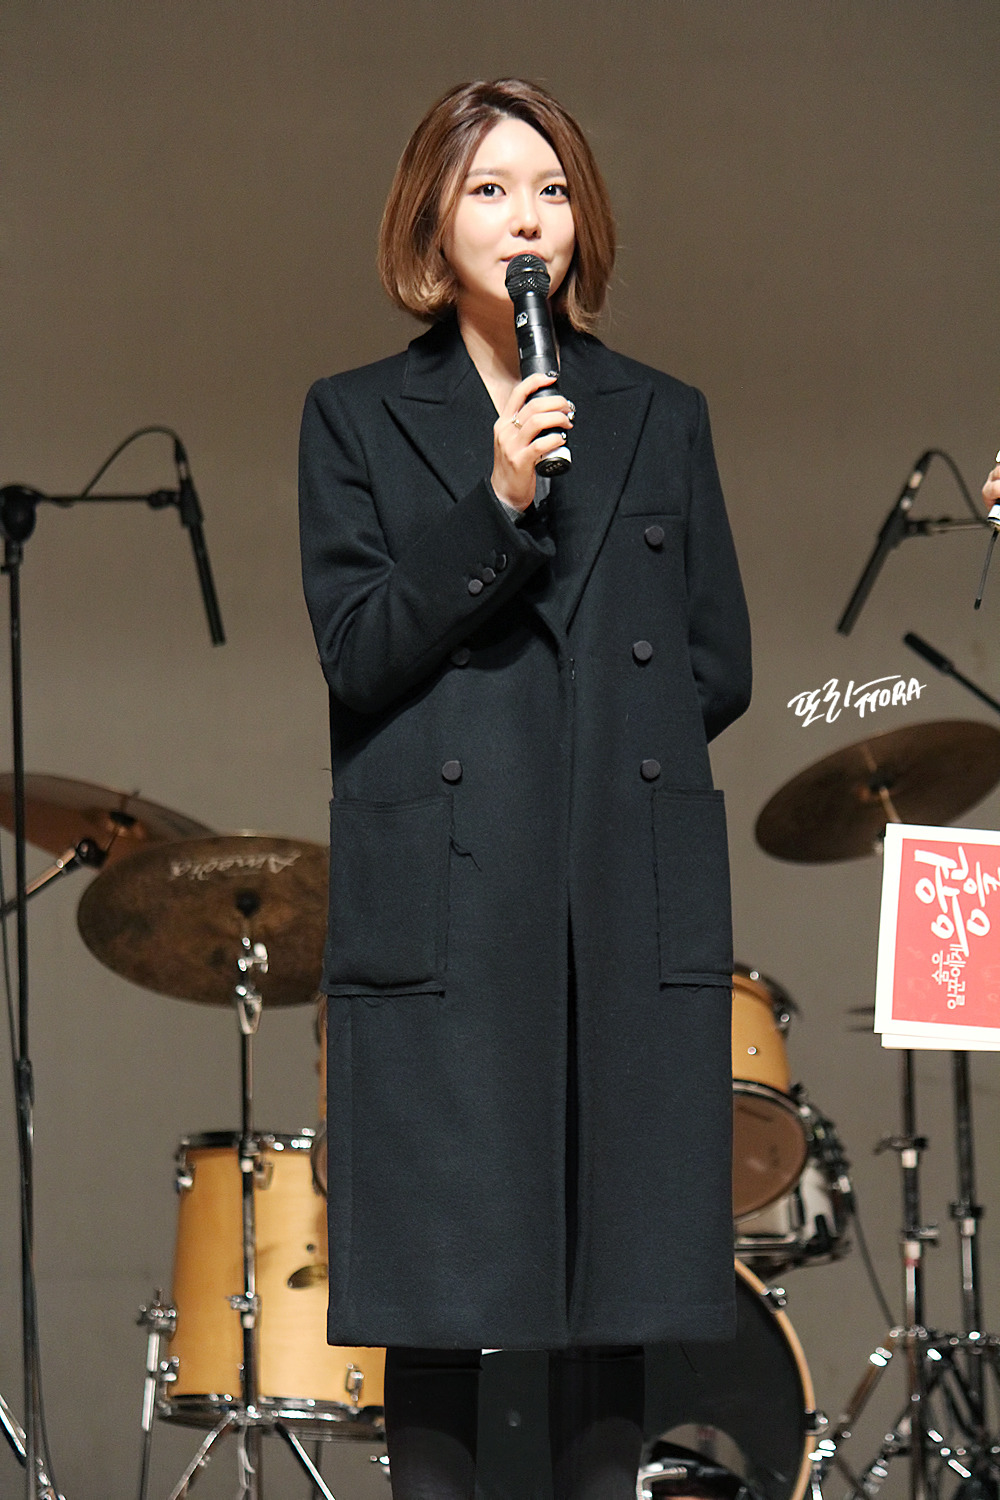 [PIC][28-11-2015]SooYoung tham dự "Korean Retinitis Pigmentosa Society Concert" vào tối nay 236A623B567923B90C49B5